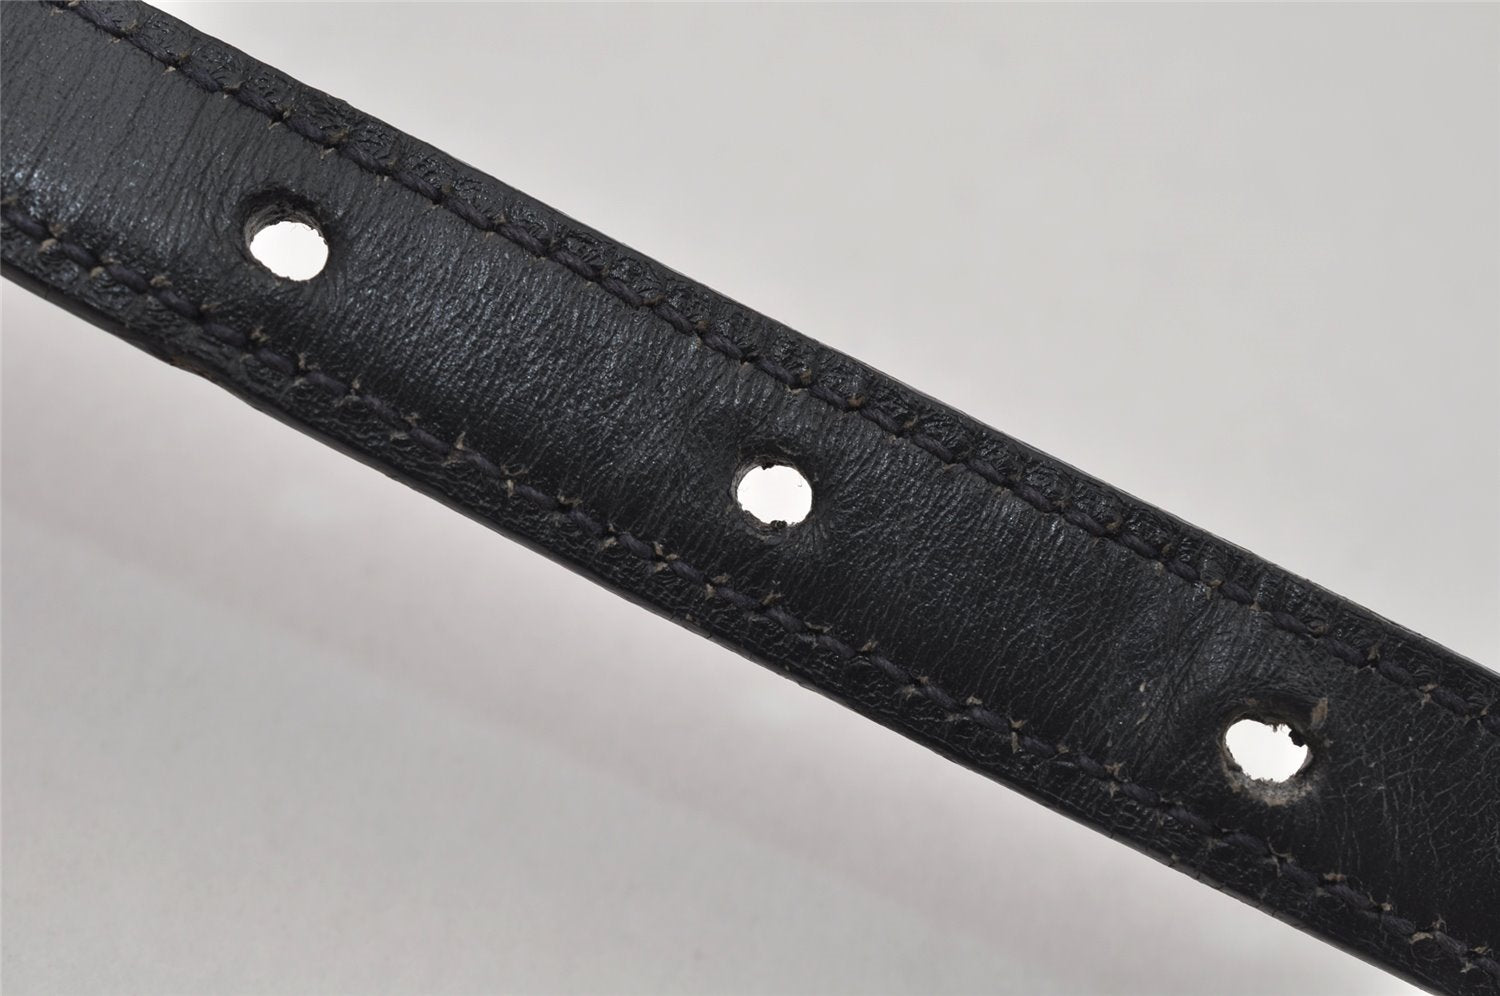 Authentic GUCCI Vintage Belt Leather Size 75-80cm 29.5-31.5